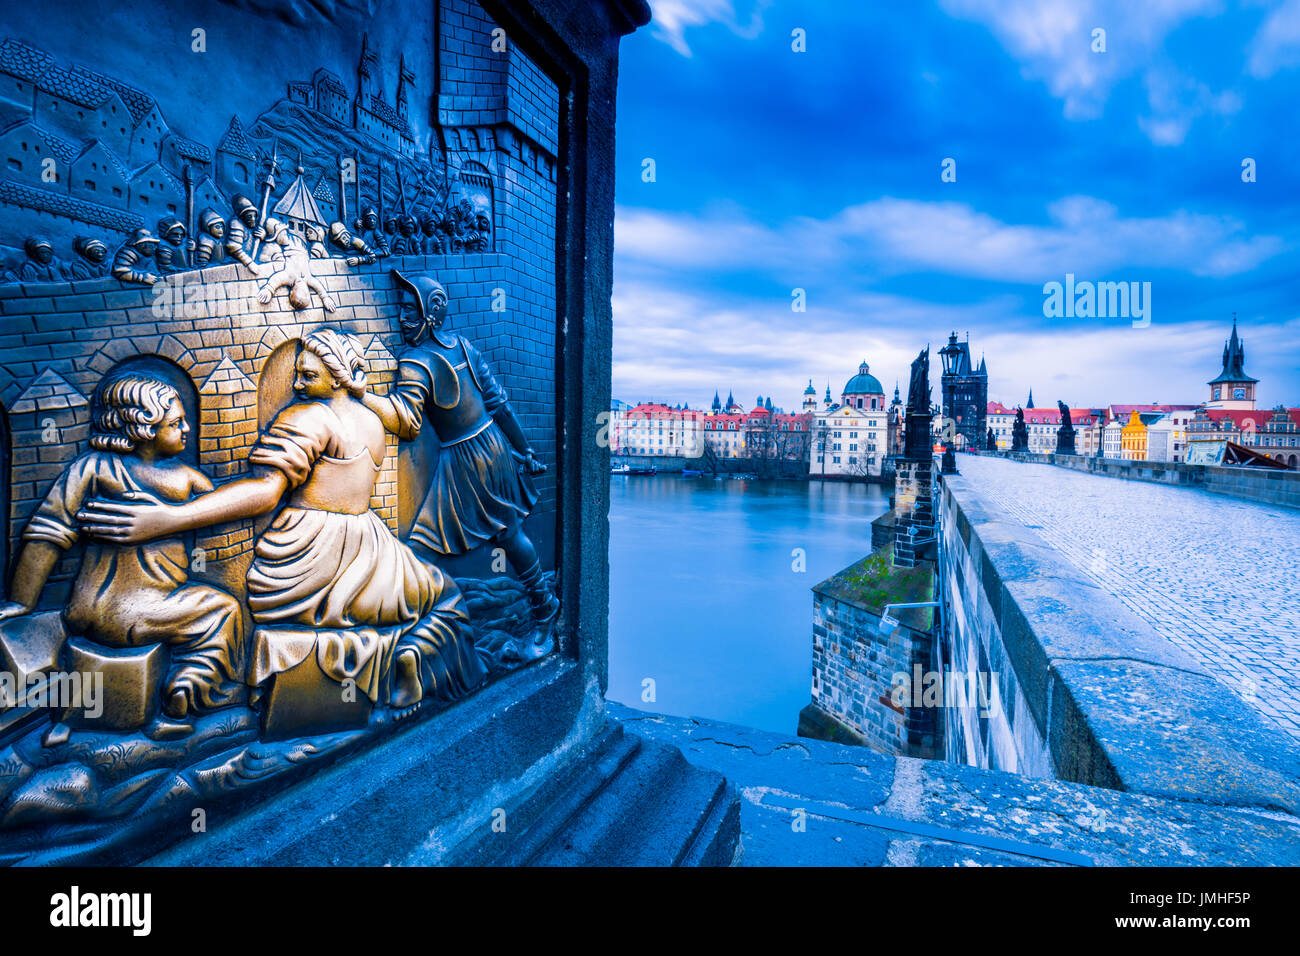 L'Europe, République tchèque, Tchéquie, Prague, vieille ville historique, l'UNESCO, le pont Charles, monument emblématique, Karluv Most sur la rivière Vltava ou Moldau Banque D'Images